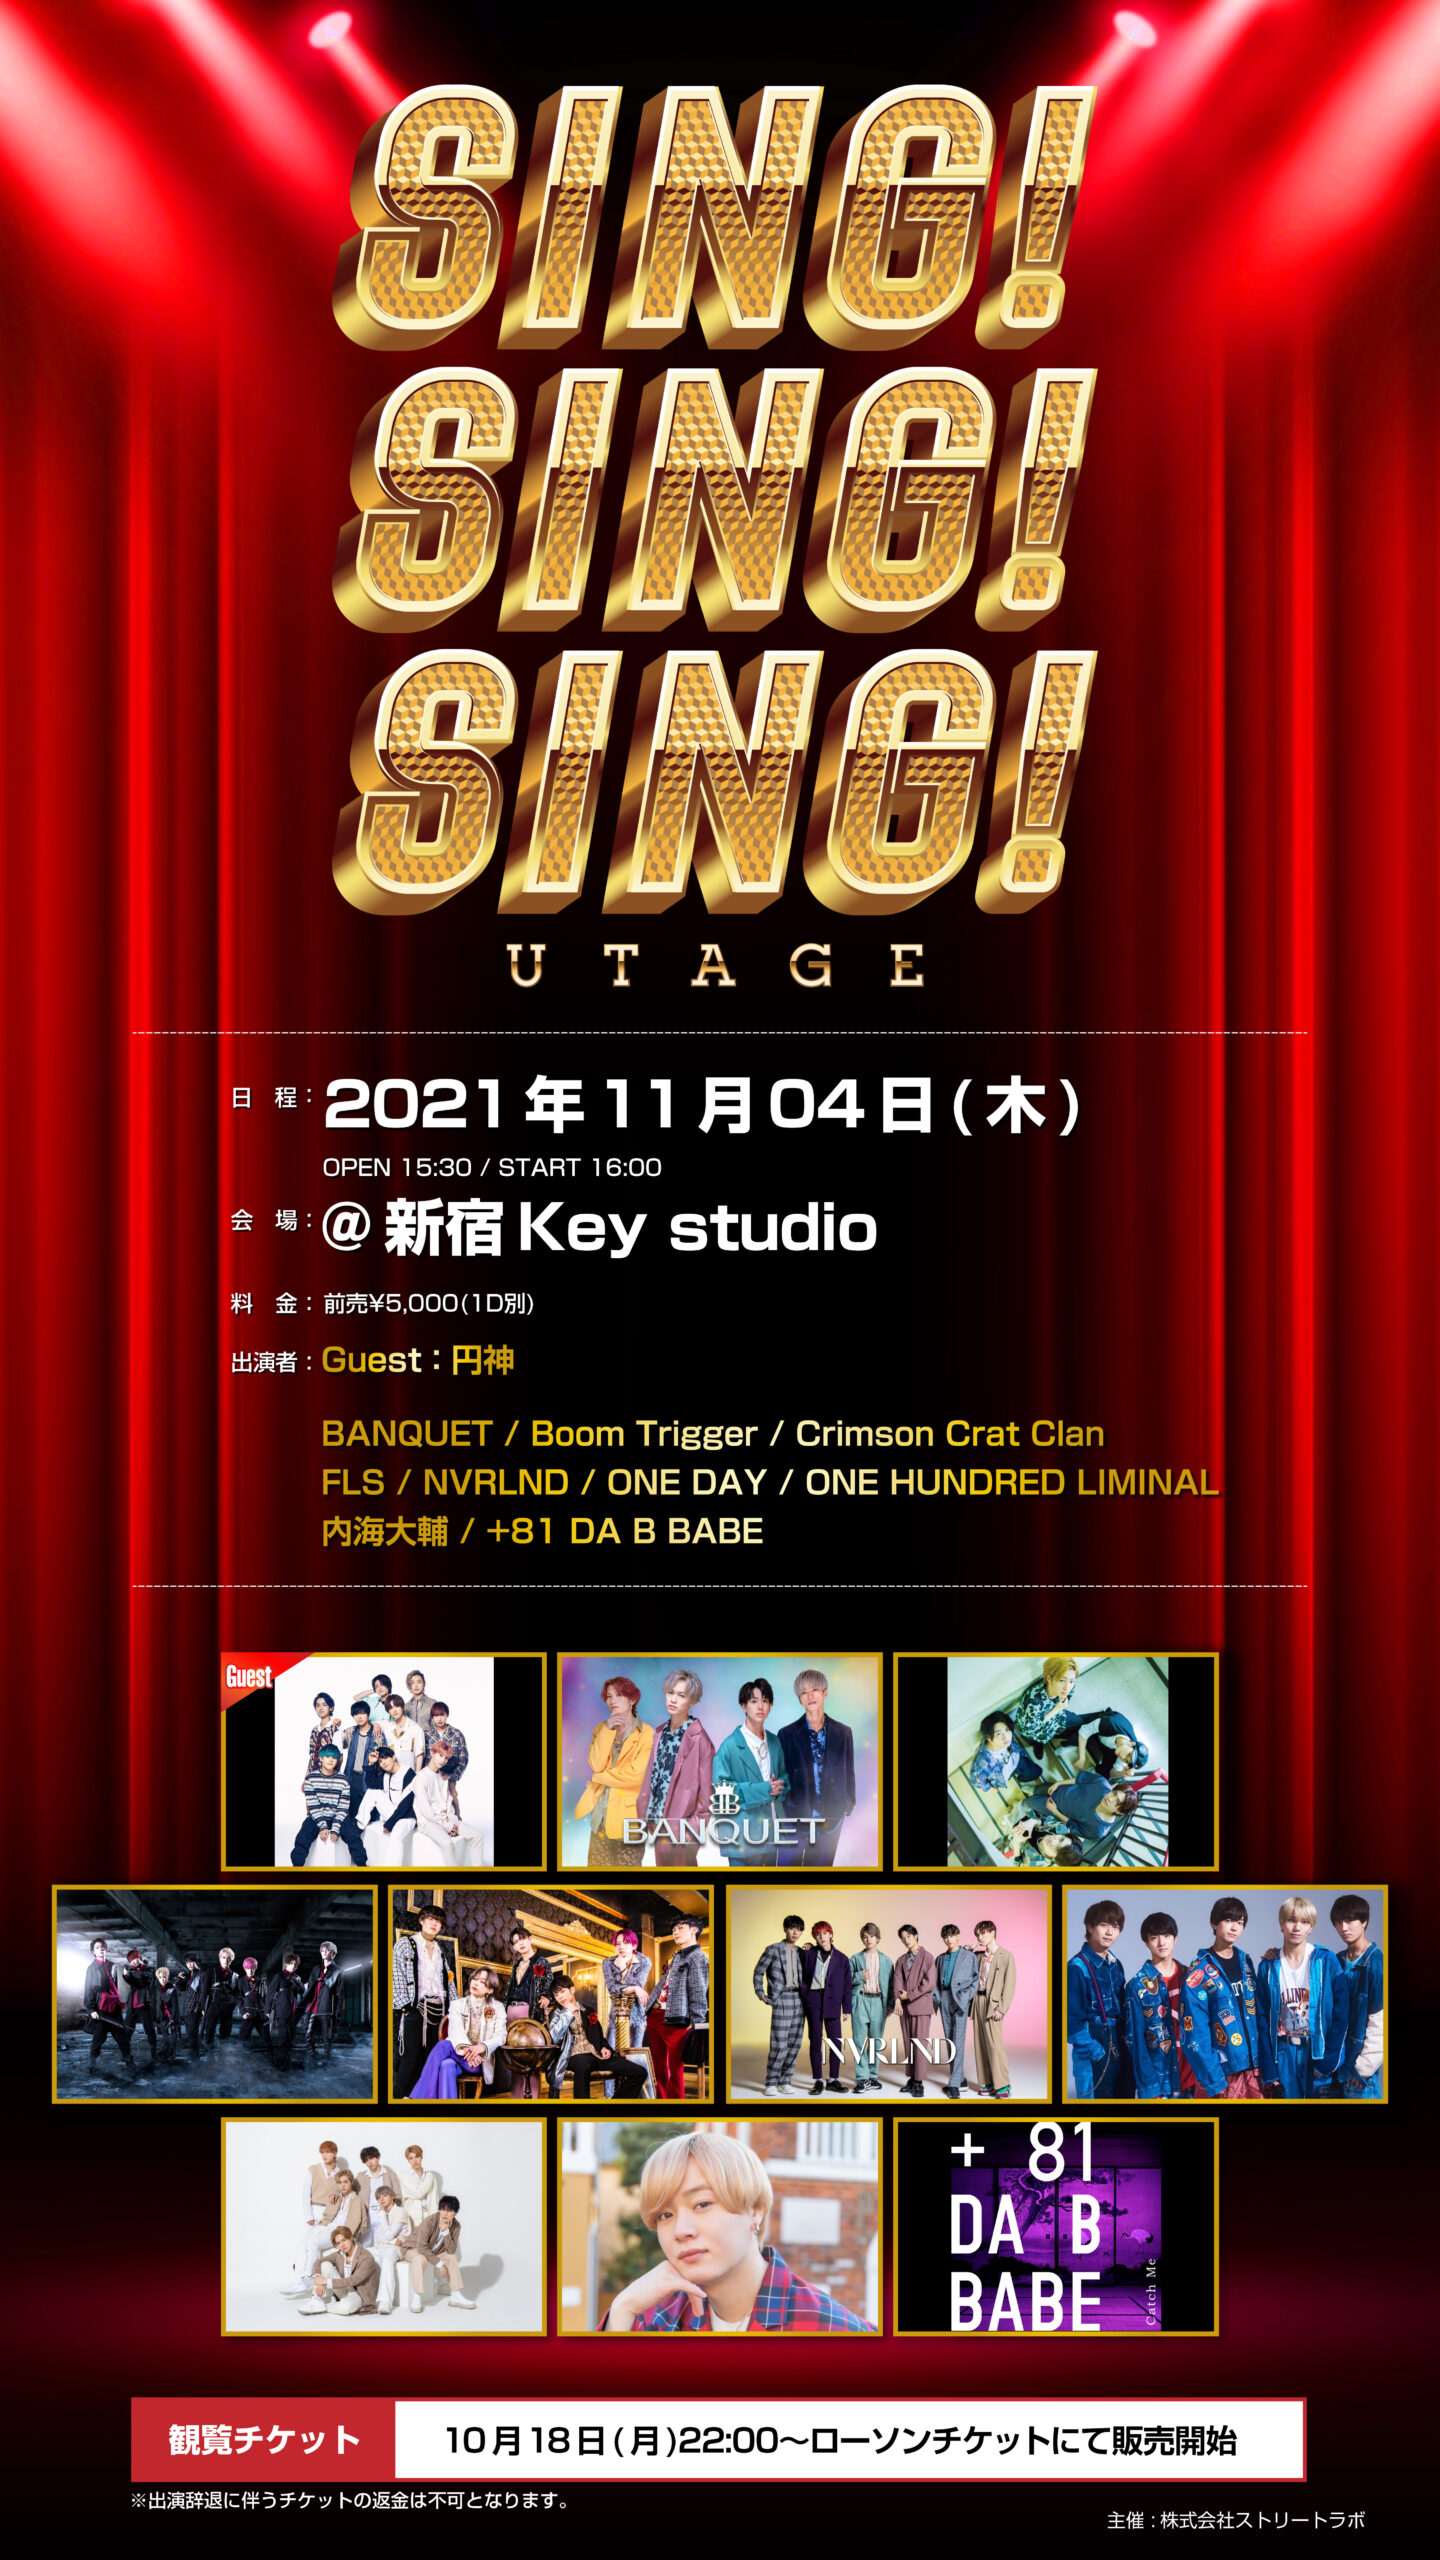 UTAGE SING!SING!SING! @新宿Key studio